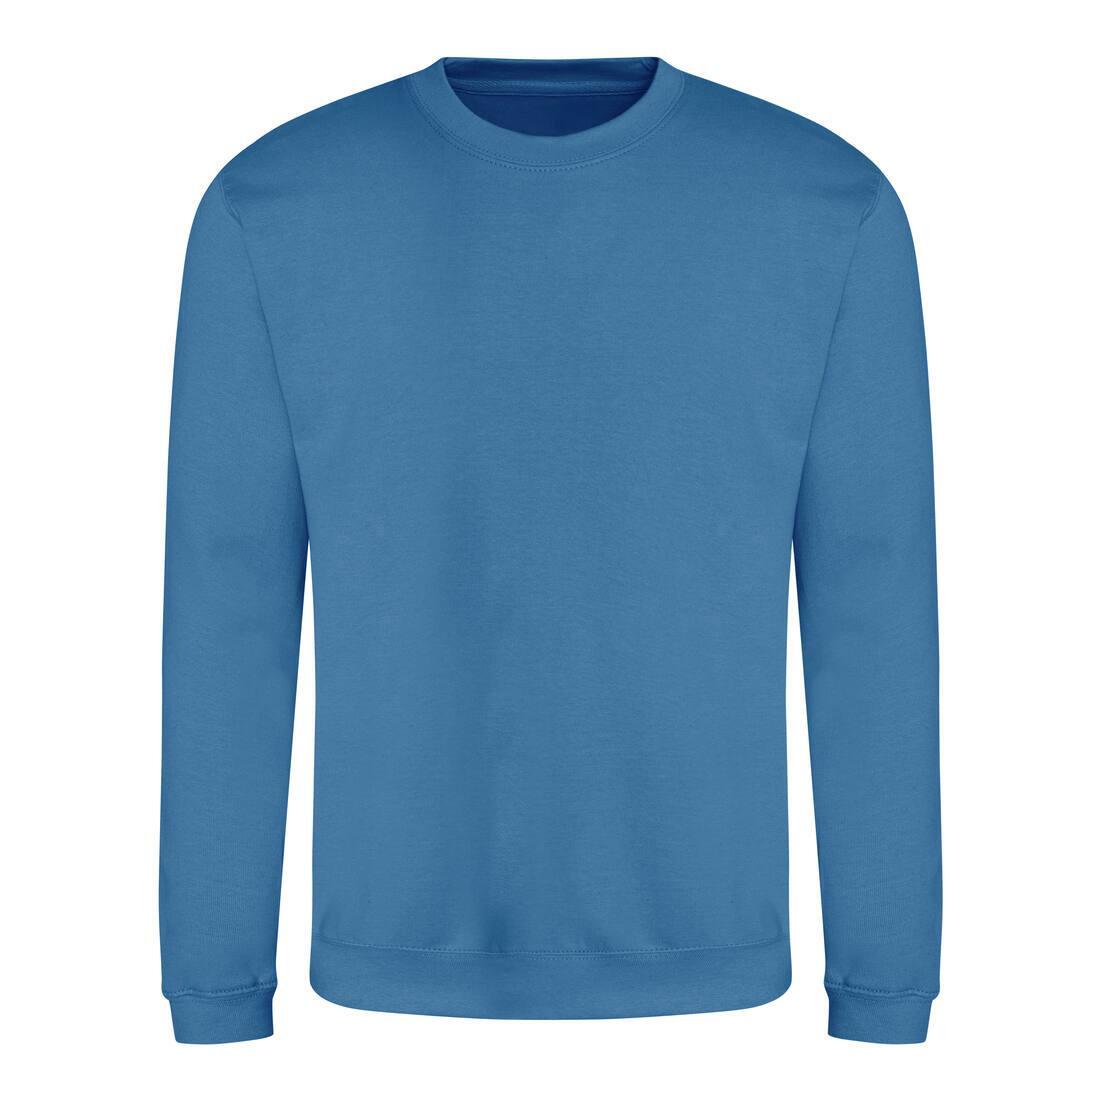 Sweater voor heren sapphire blue Just Hoods te personaliseren